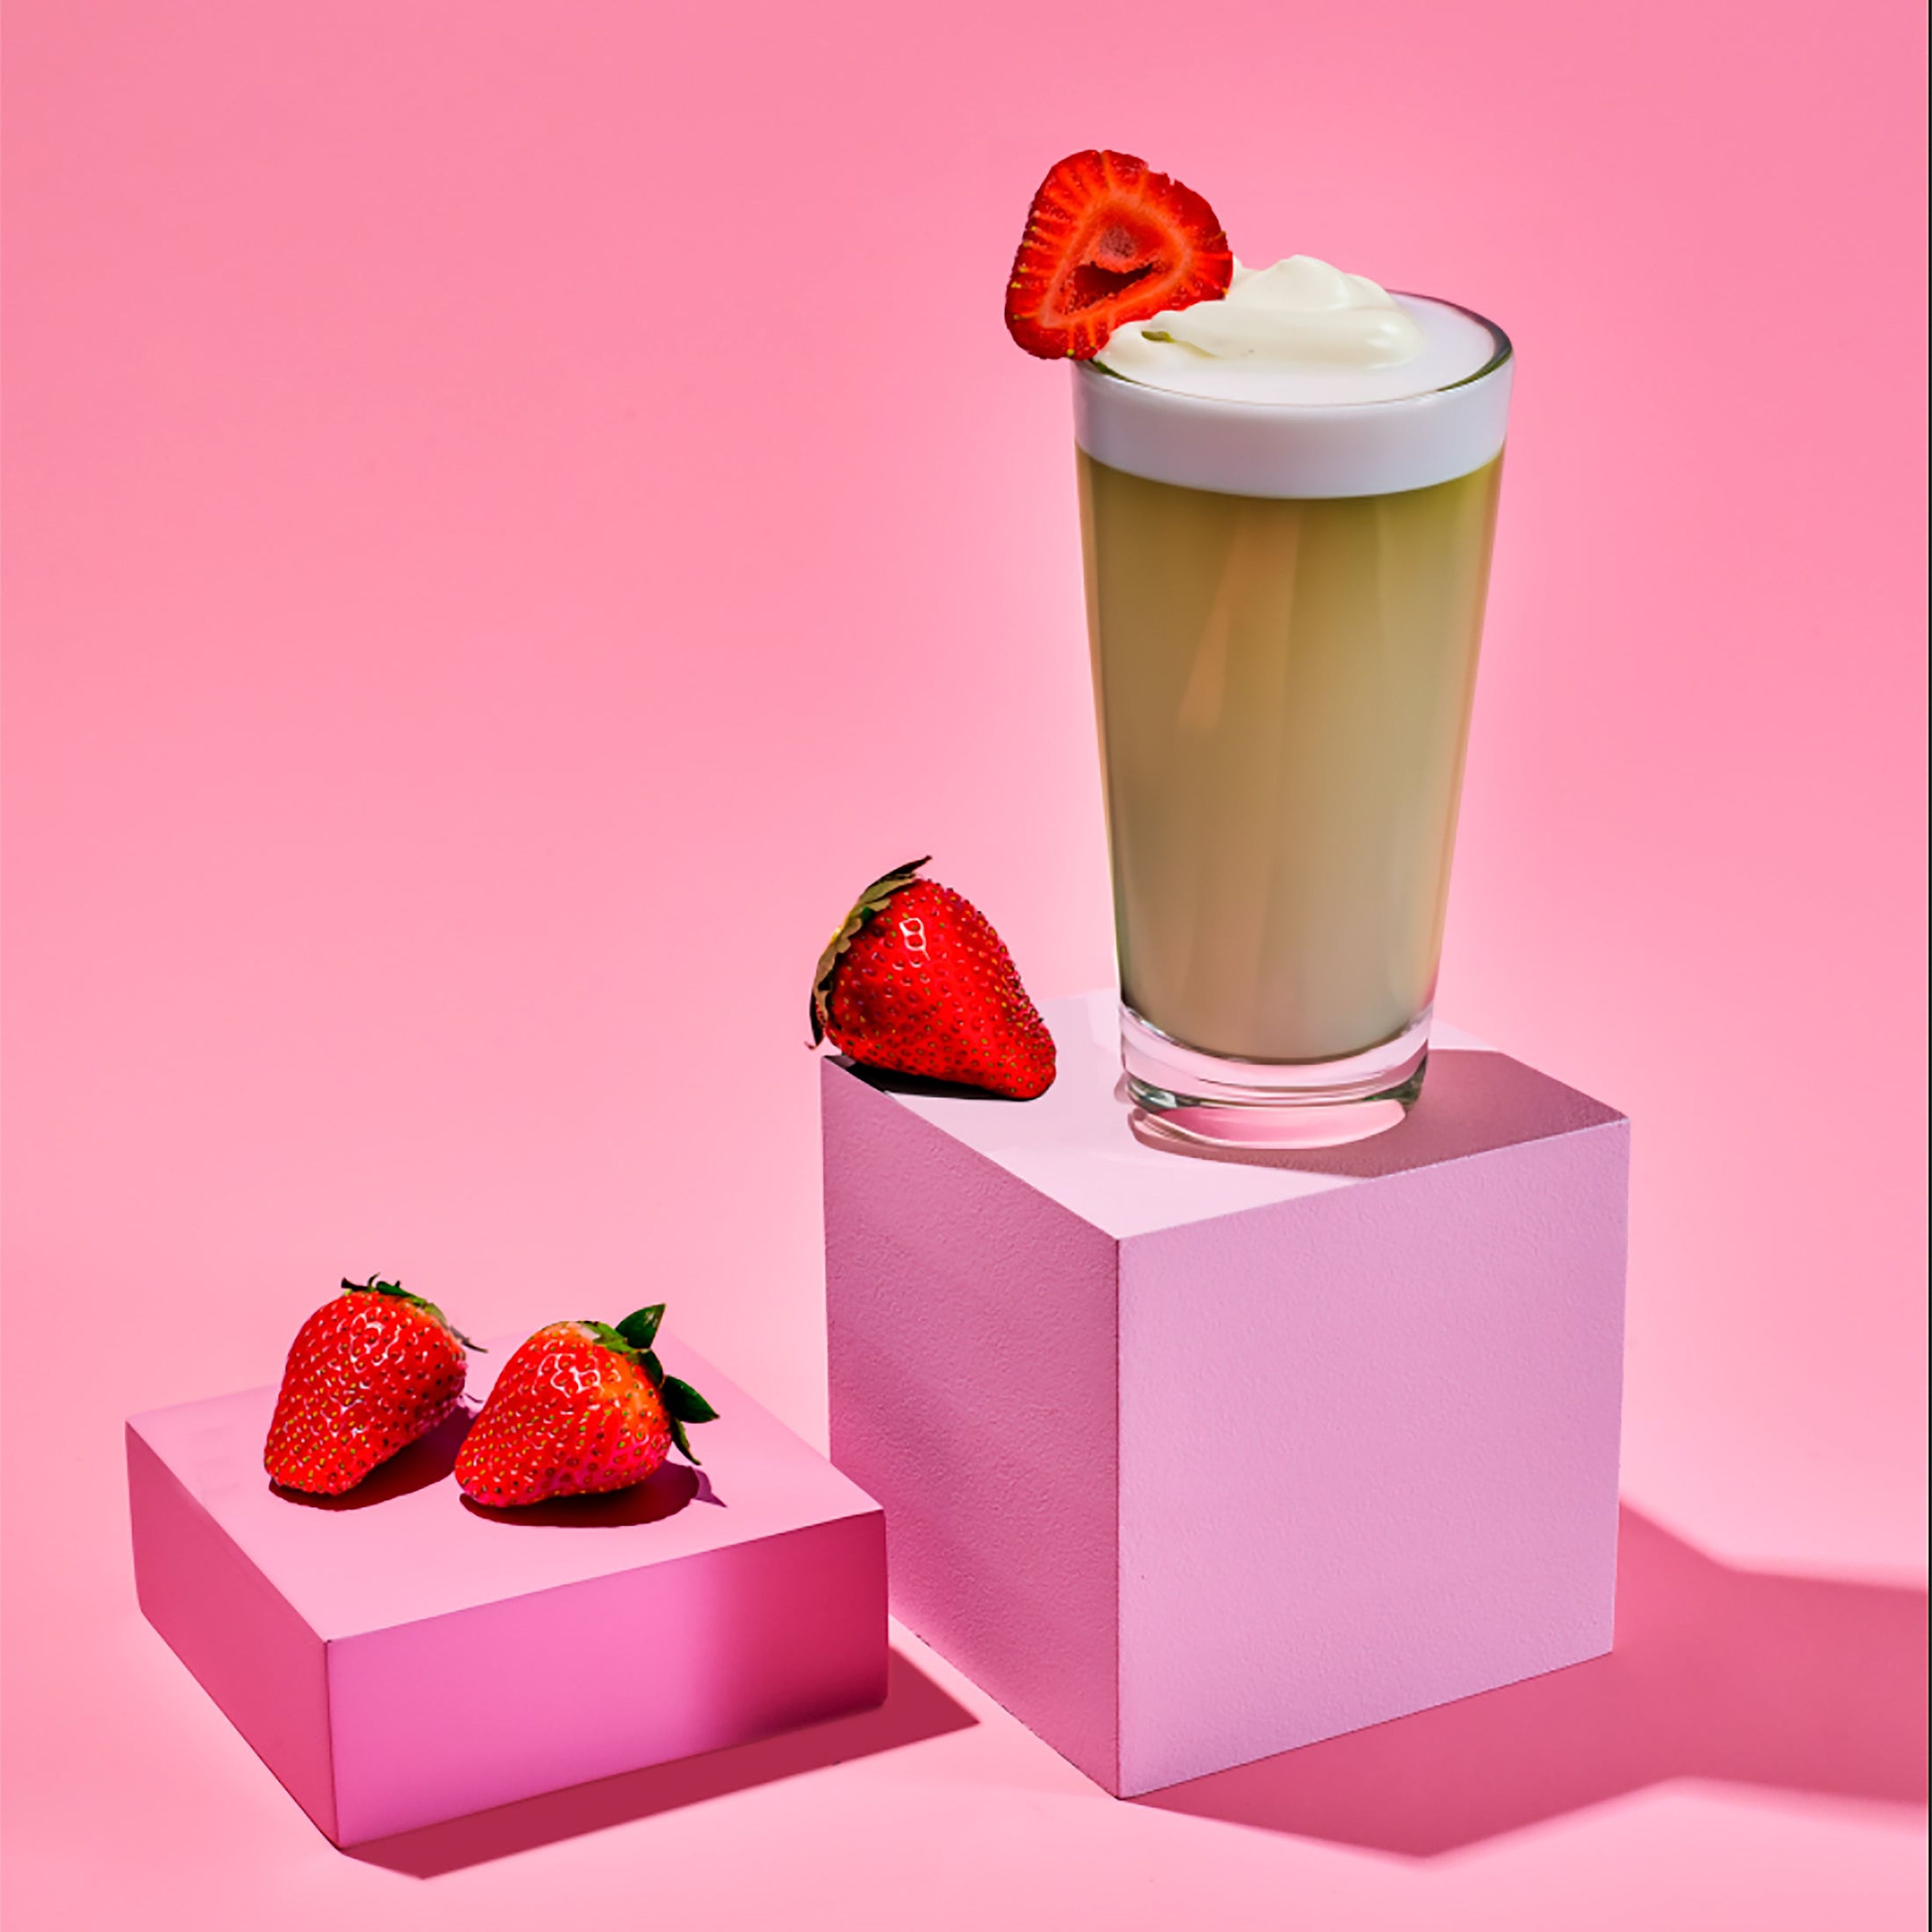 Strawberry Matcha Latte Kit